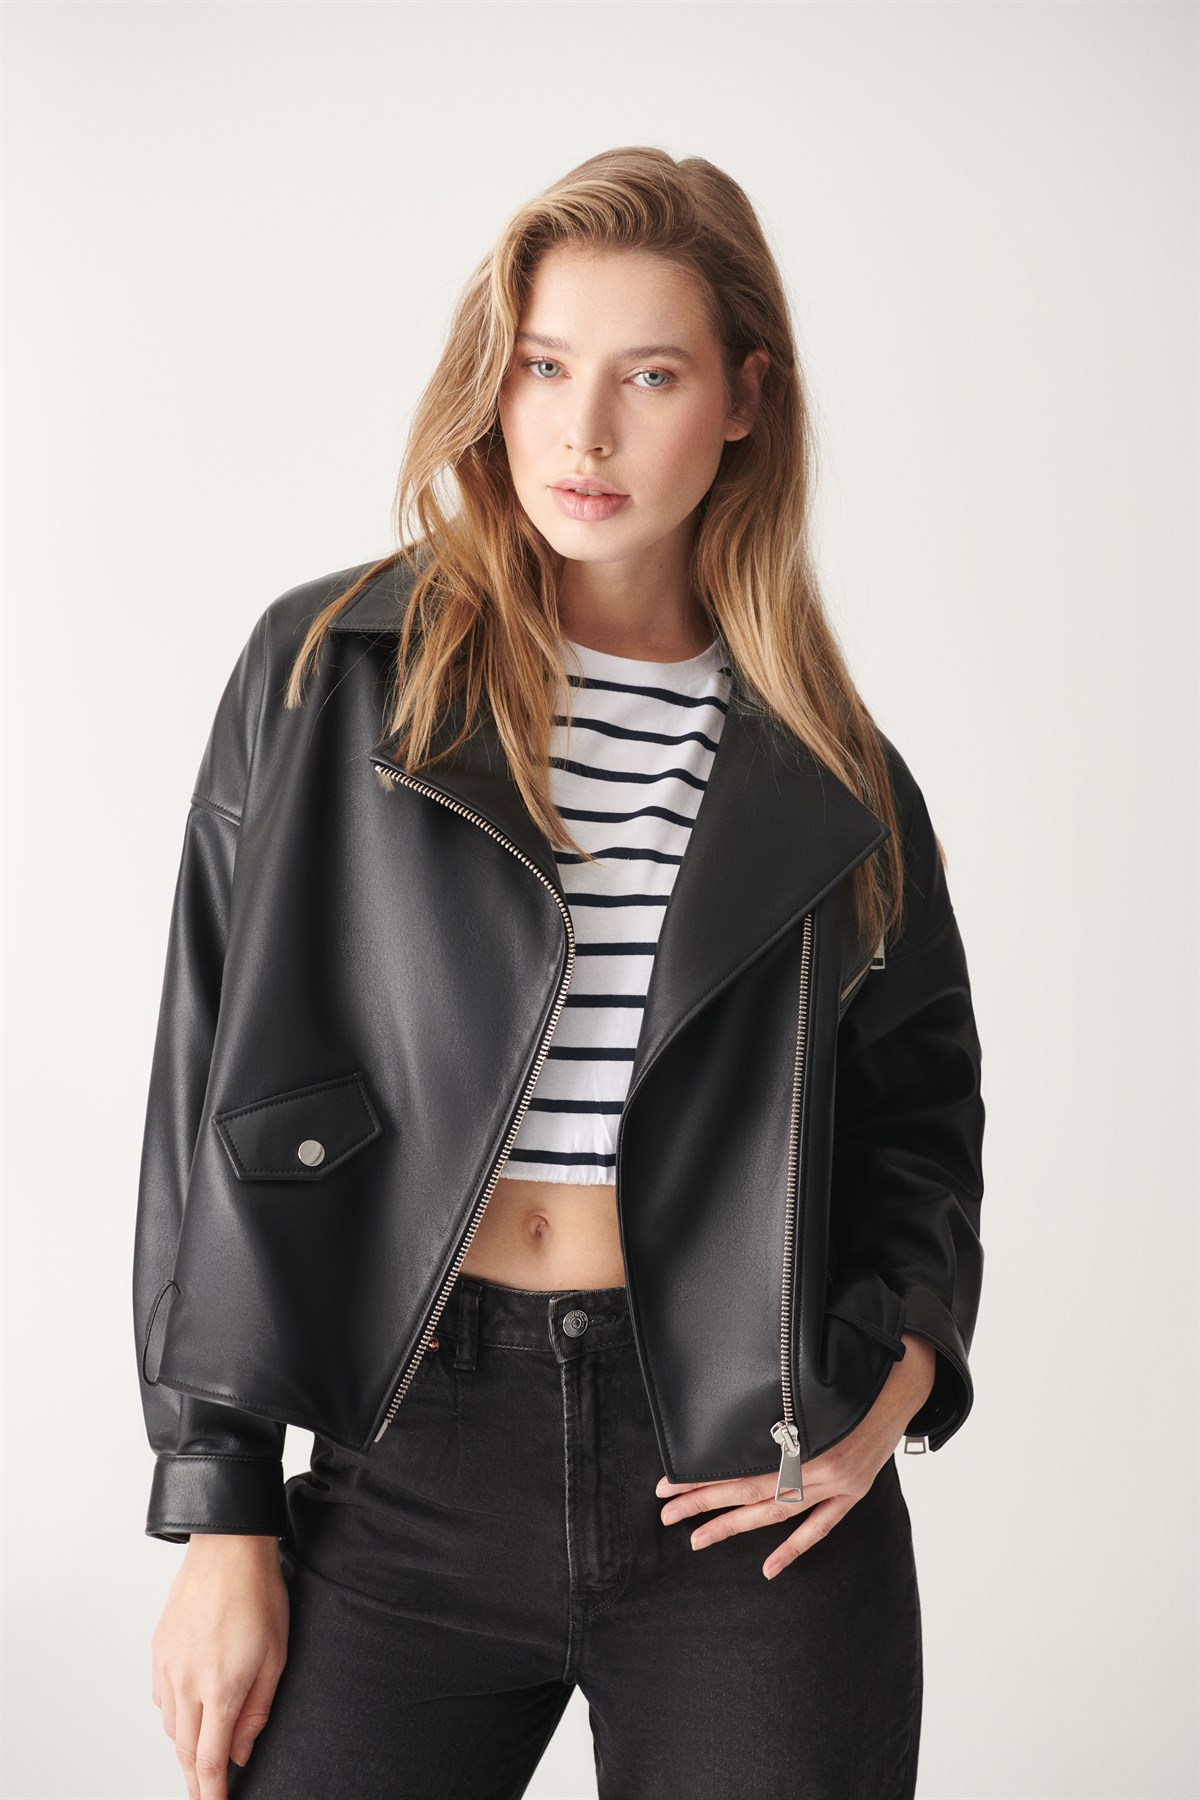 HELEN Black Oversized Leather Jacket | Women's Leather Jacket Models